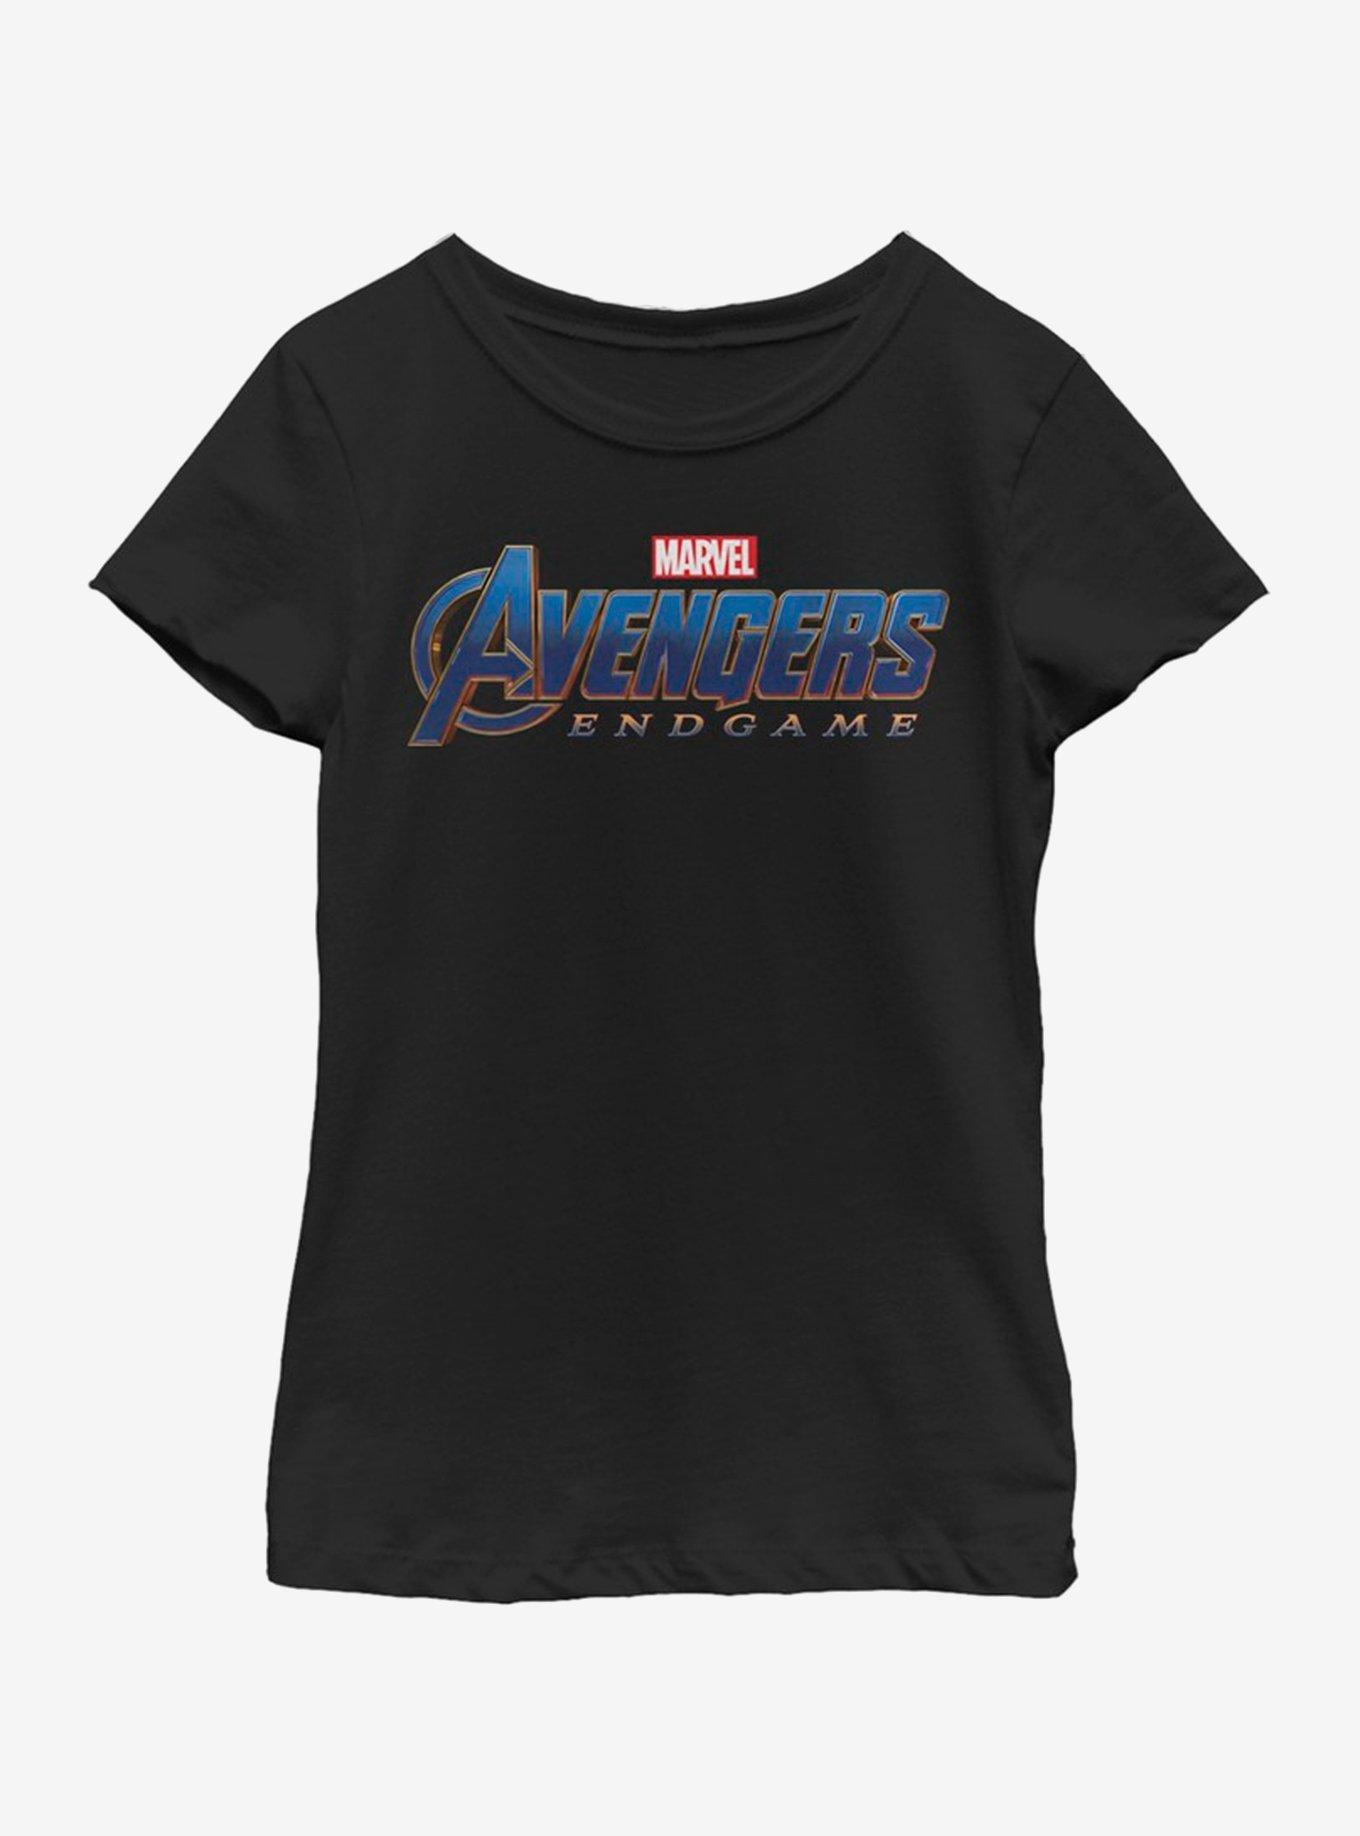 Marvel Avengers: Endgame Endgame Logo Youth Girls T-Shirt, BLACK, hi-res